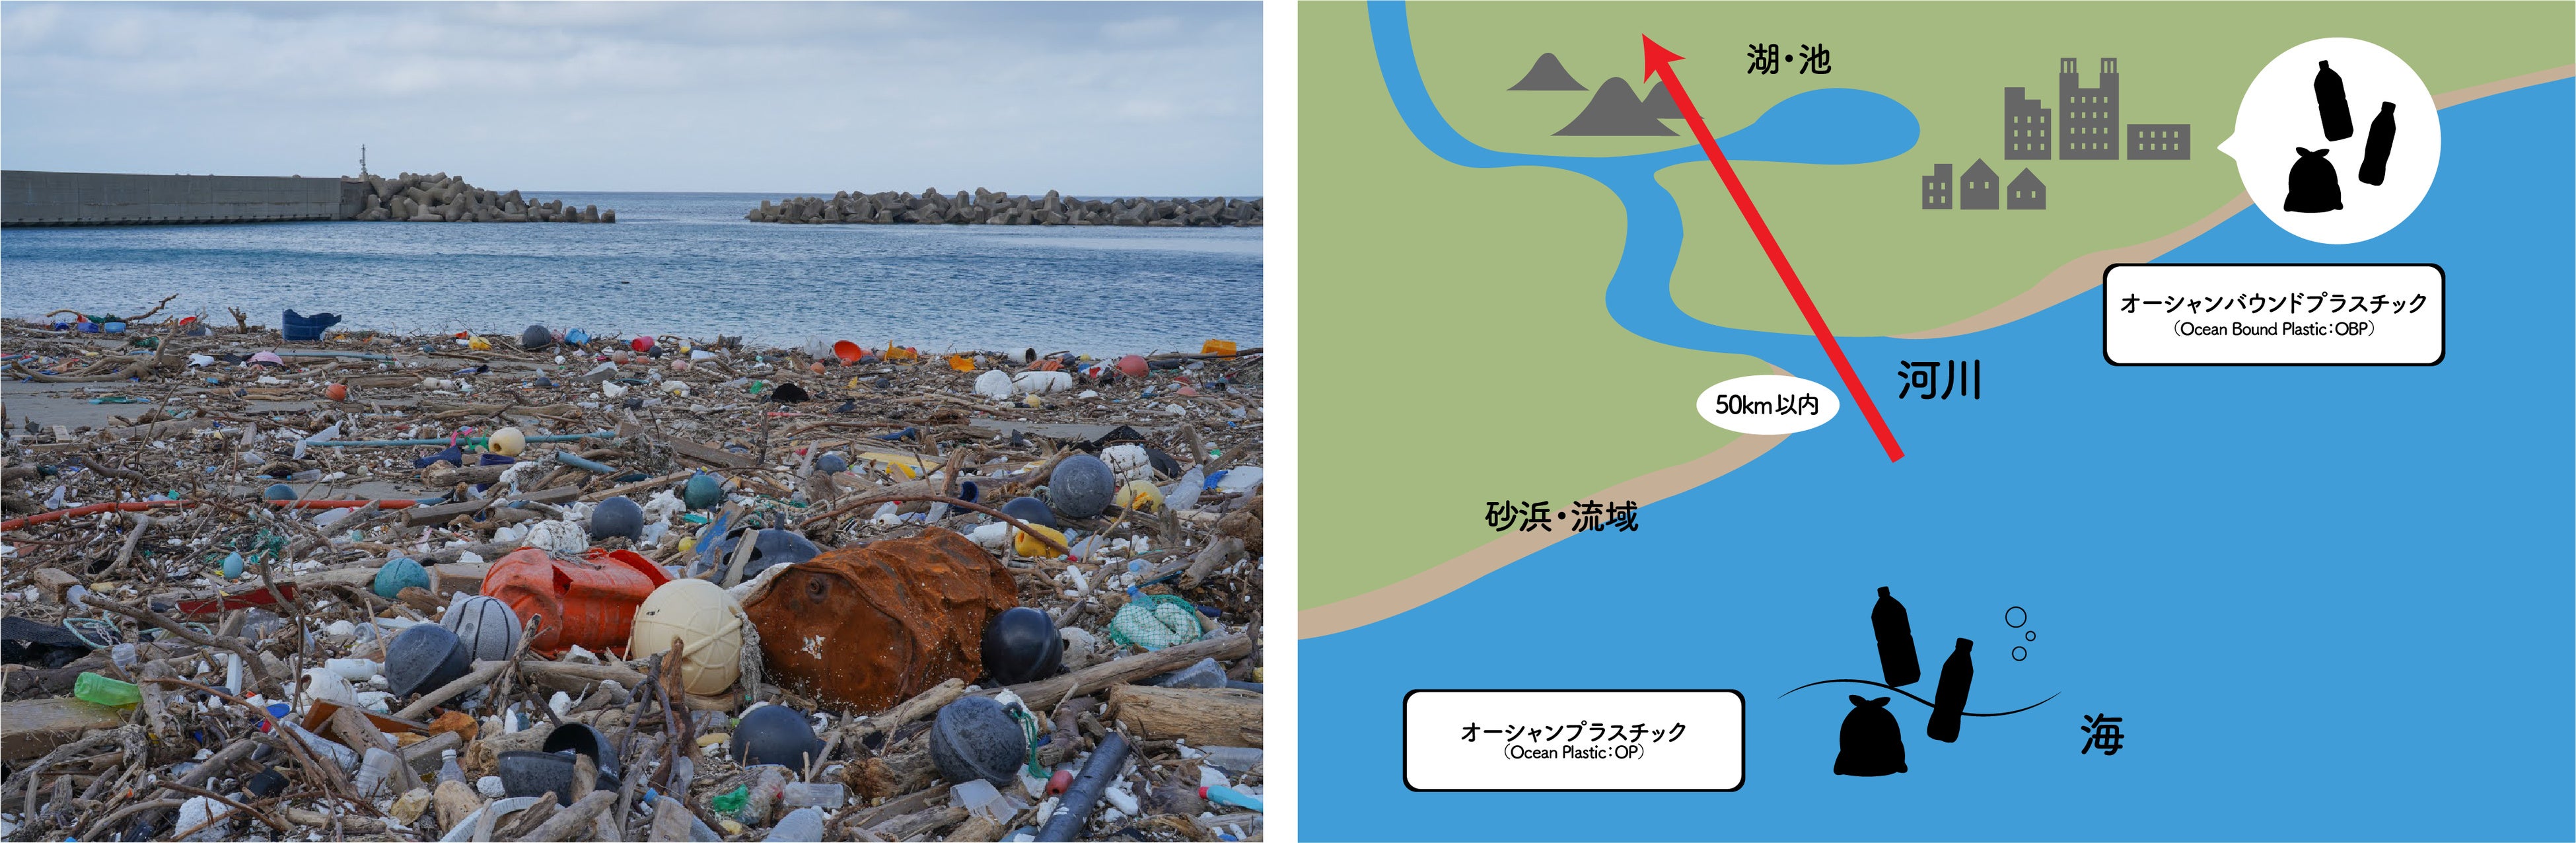 創業137年の工具箱メーカーが長崎県対馬市に漂着した”オーシャンプラスチック”を使用した収納ボックスシリー...